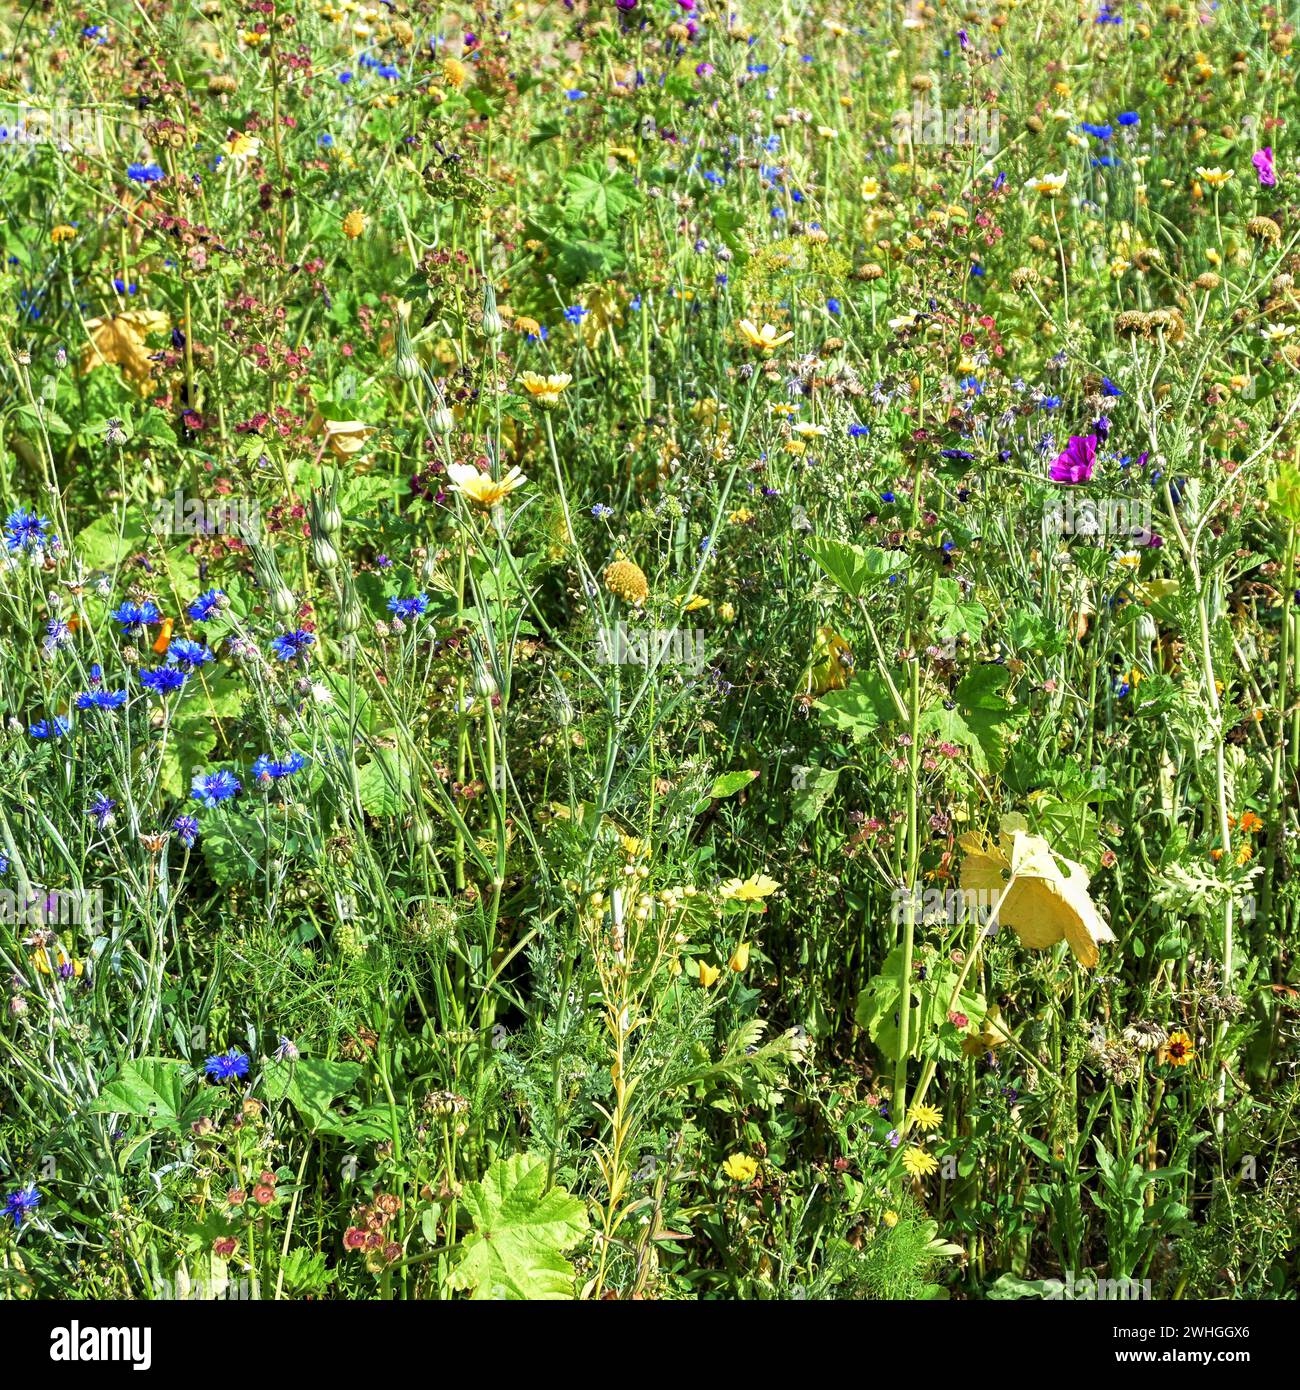 Prato di fiori selvatici con fiori di mais, malva, camomilla e molto altro ancora per migliorare la biodiversità, preservando uccelli e insetti, backgroun Foto Stock